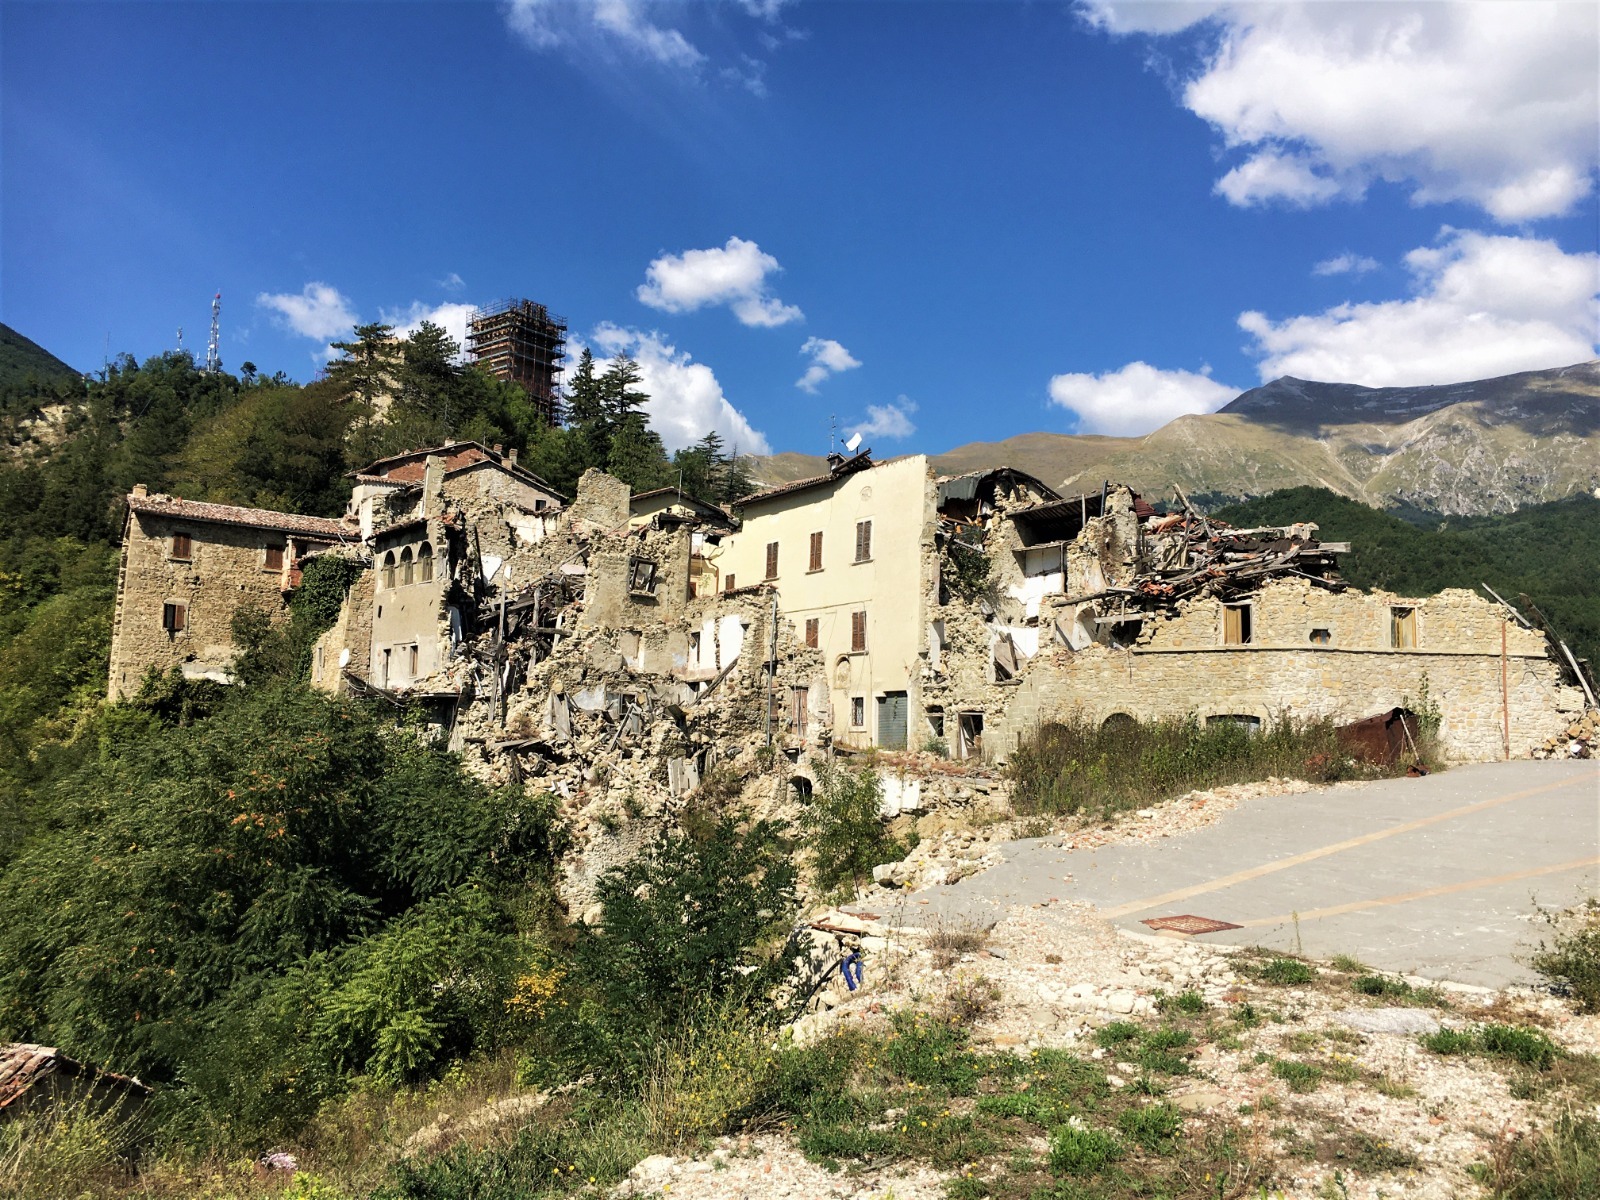 Ricostruzione post sisma in Marche e Abruzzo: anche i detenuti al lavoro nei cantieri